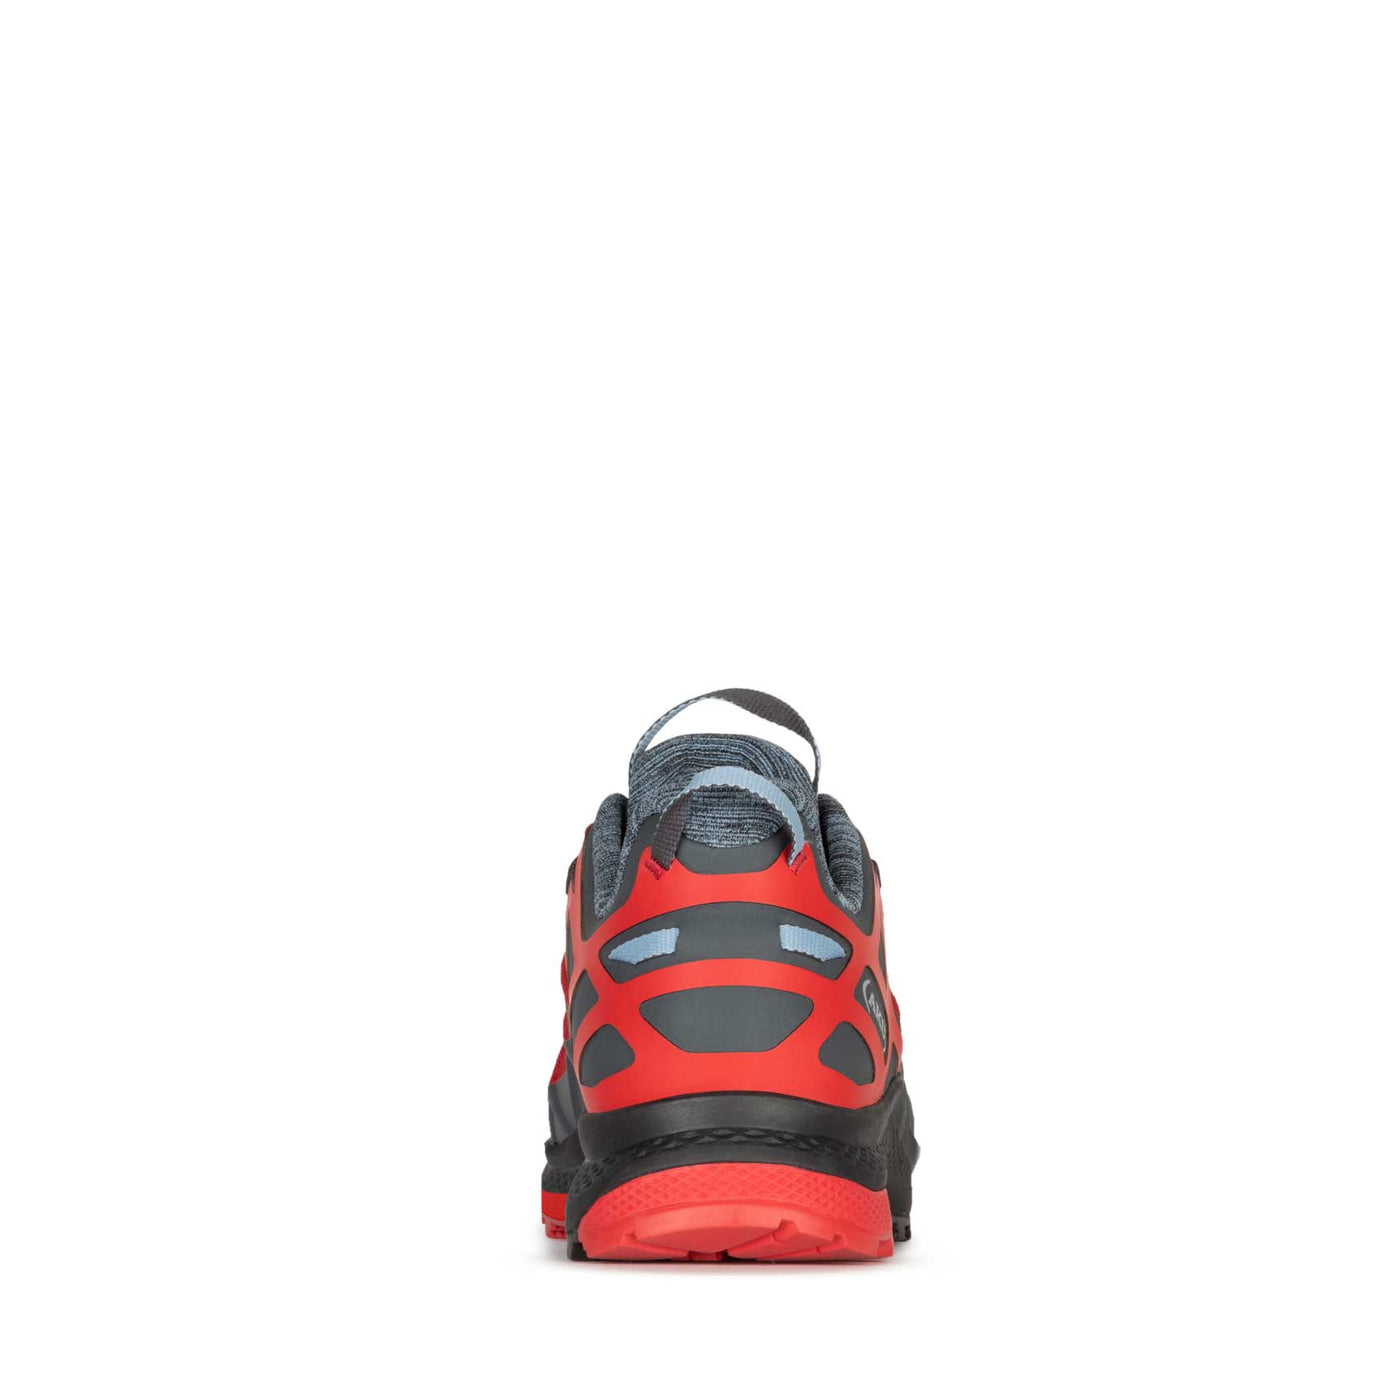 AKU chaussures de randonnée Rocket DFS GTX - Homme